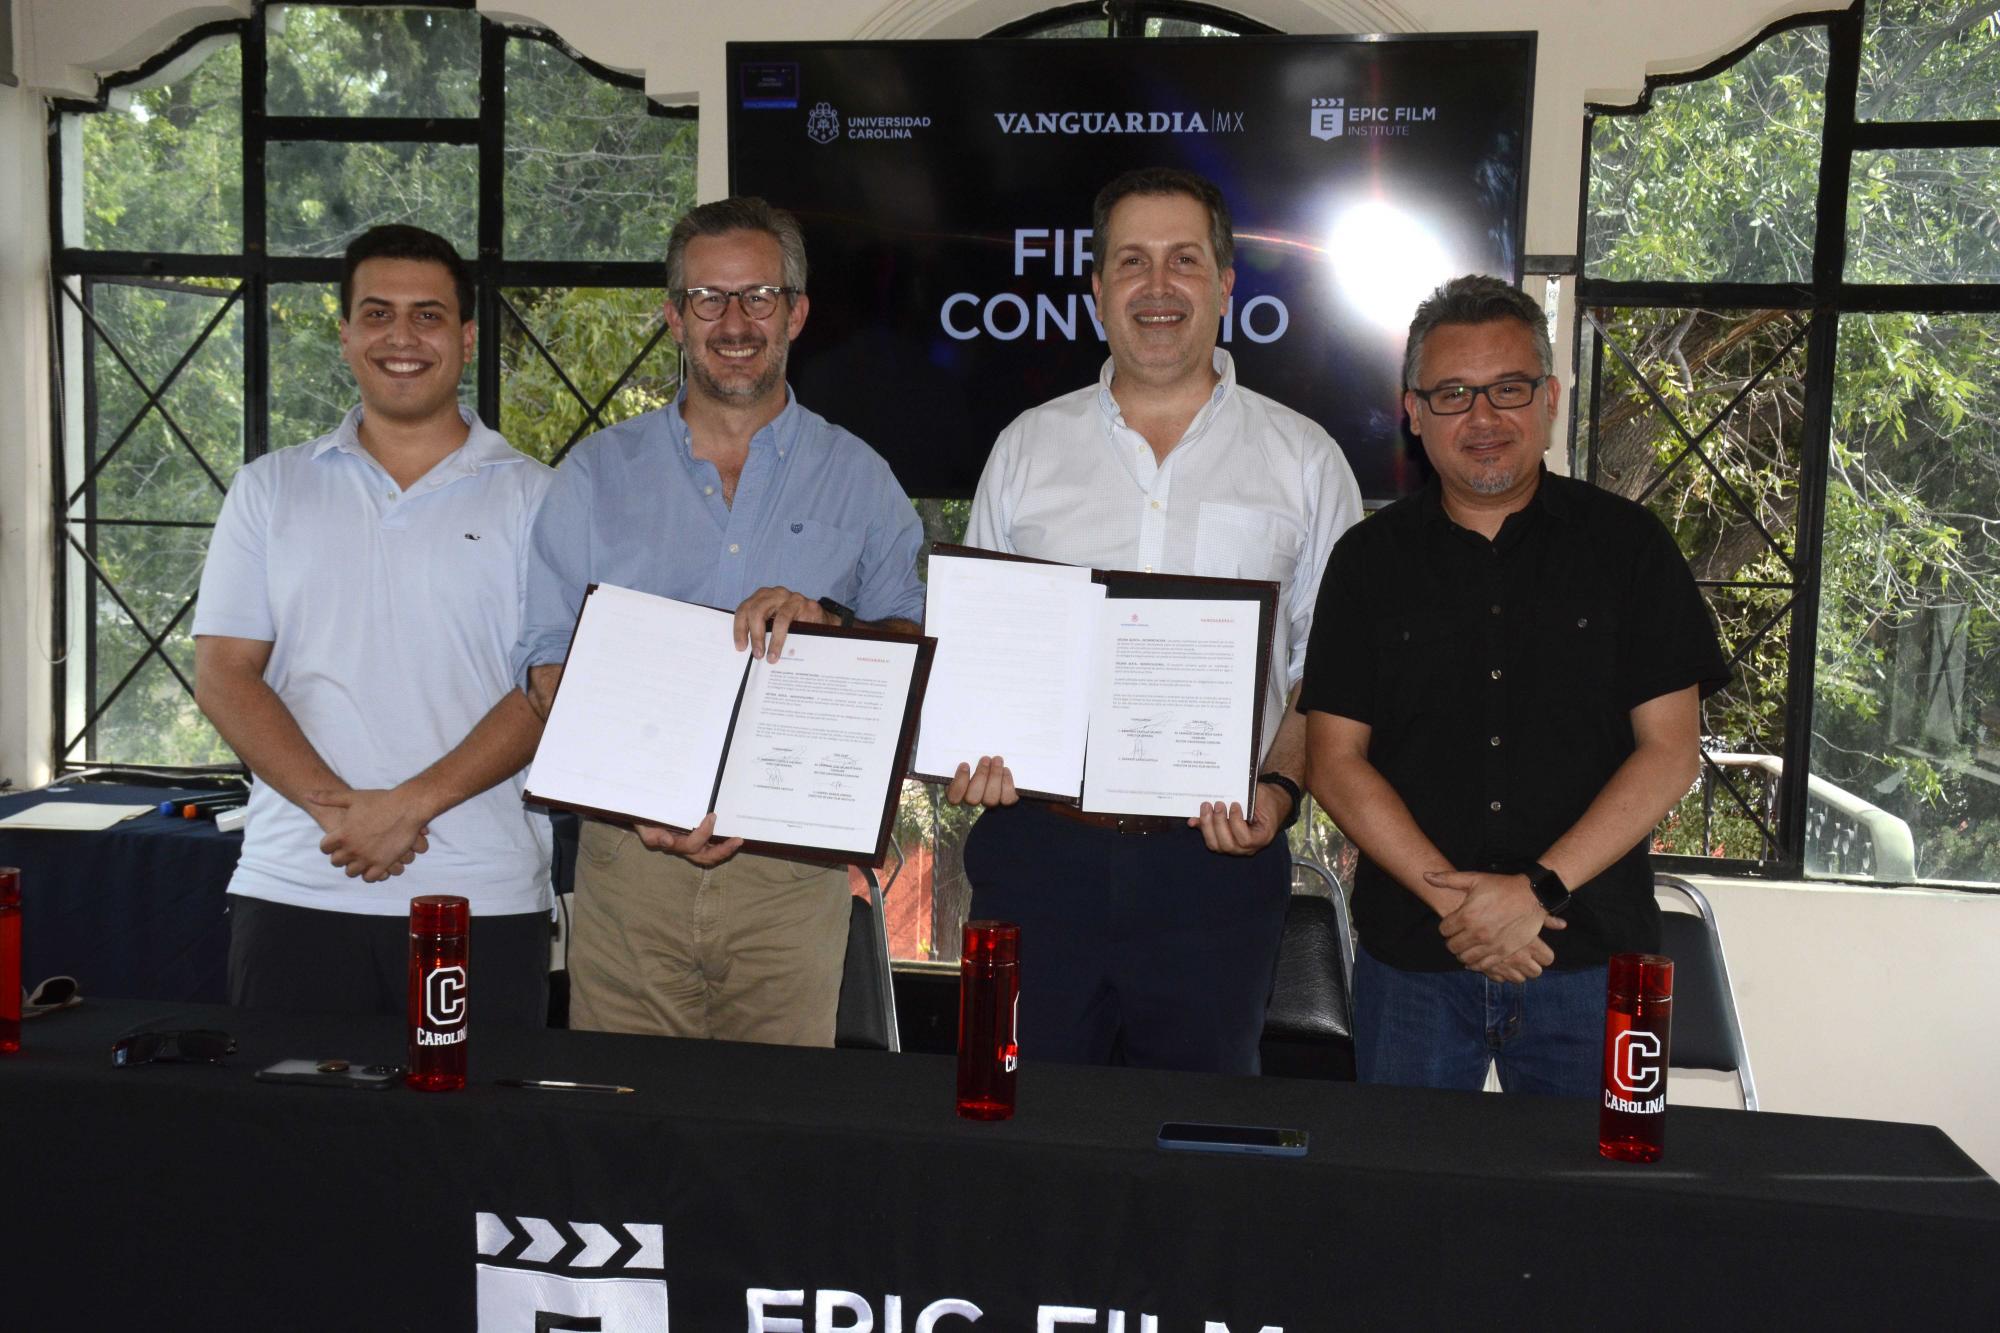 $!Gabriel Ramos, Director de Epic Institute, dijo que este convenio consiste en hacer prácticas profesionales y servicio social para los alumnos de la carrera de cine.